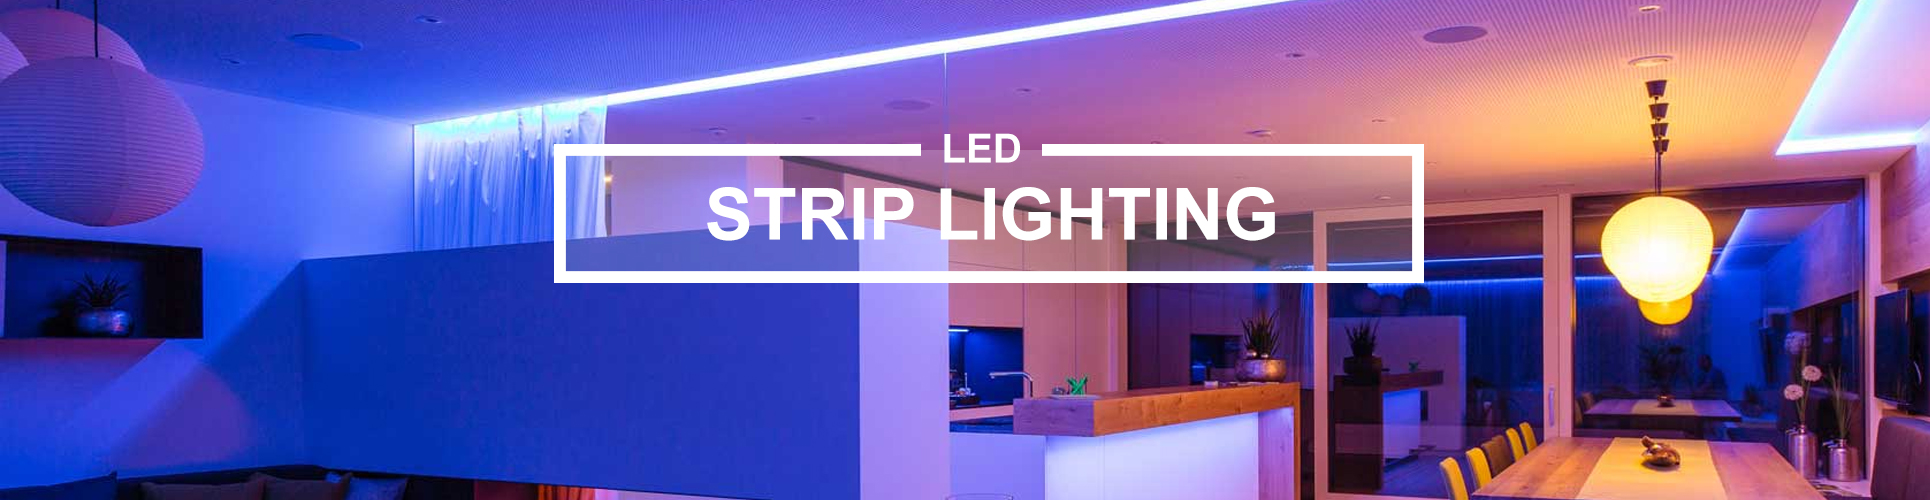 LED strip lighting